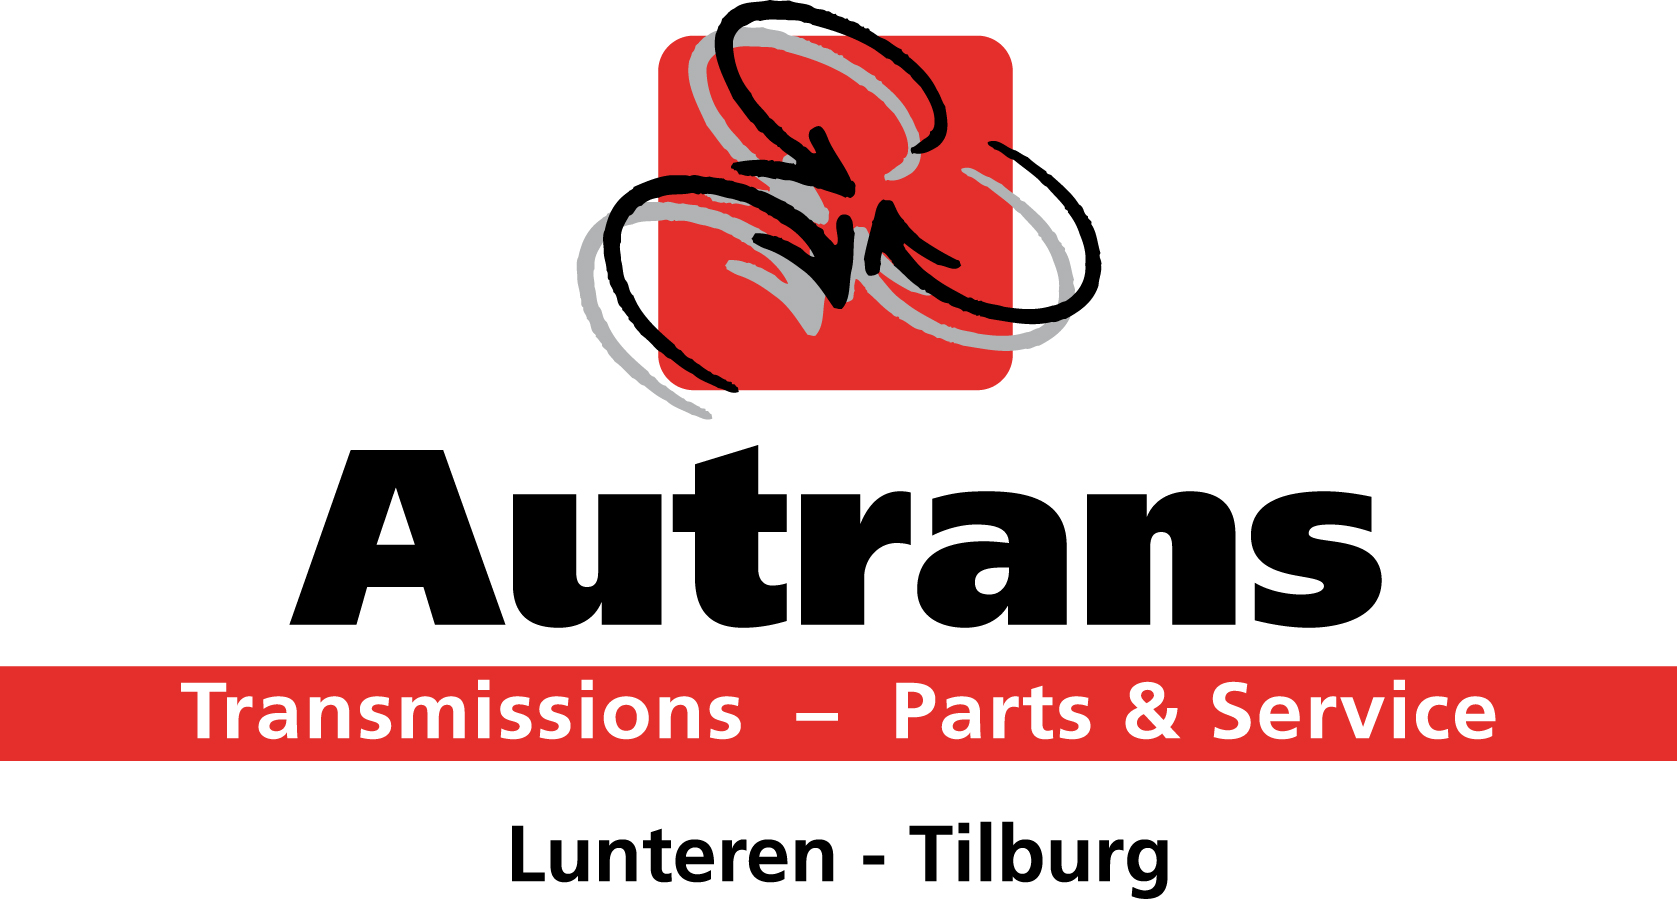 AutransLogo Lunteren Tilburg